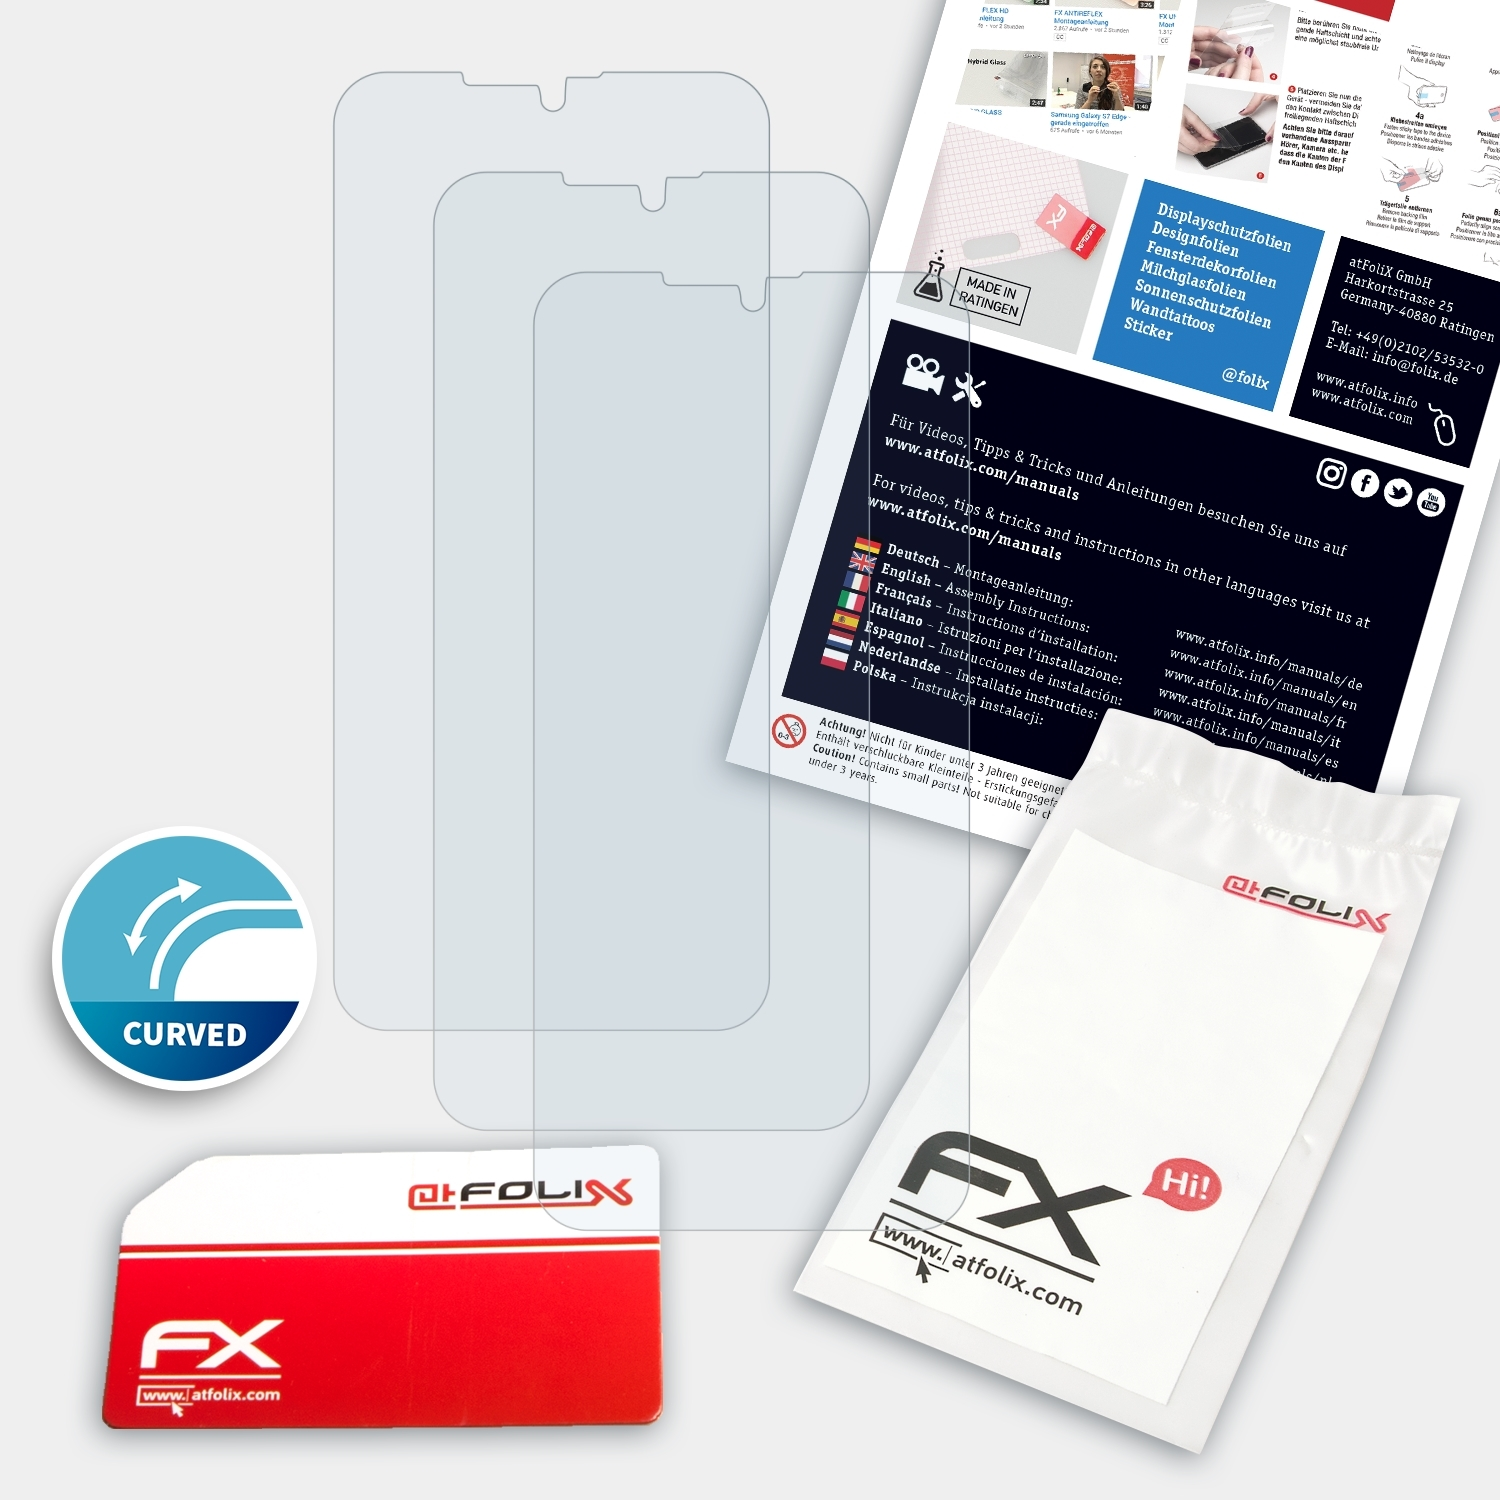 GS190) ATFOLIX 3x Gigaset Displayschutz(für FX-ActiFleX